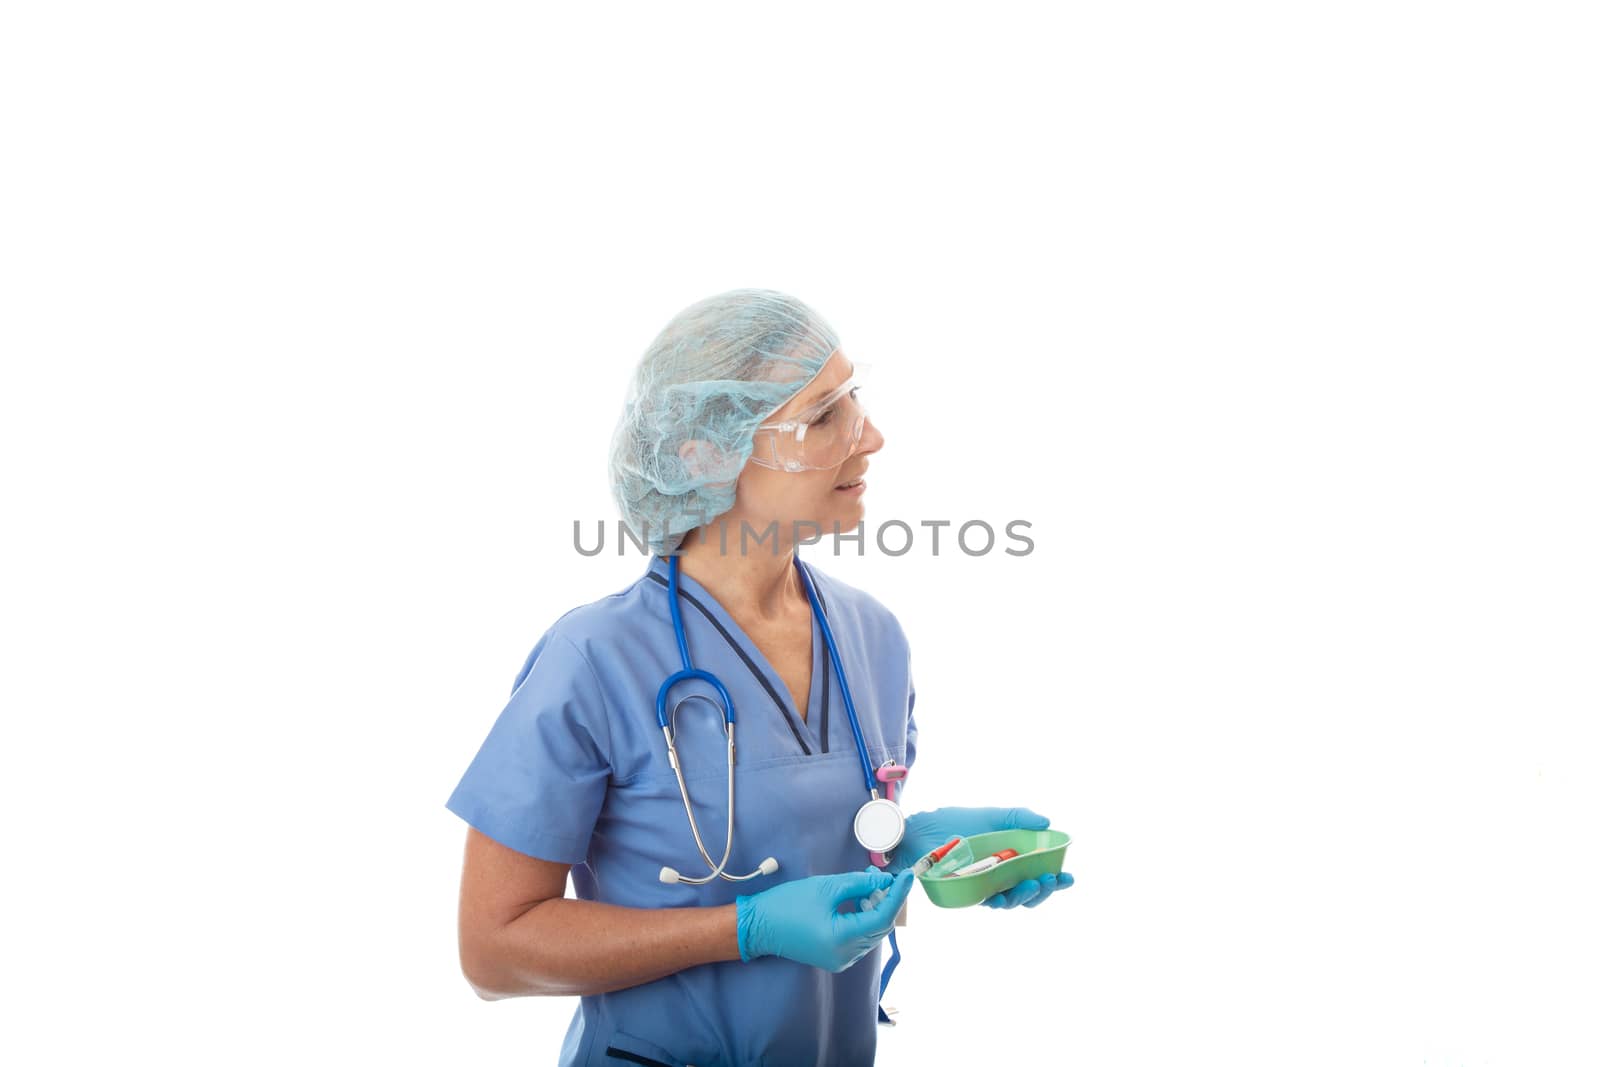 Hospital healthcare nurse or pathologist holding blood test tubes and needle syringe